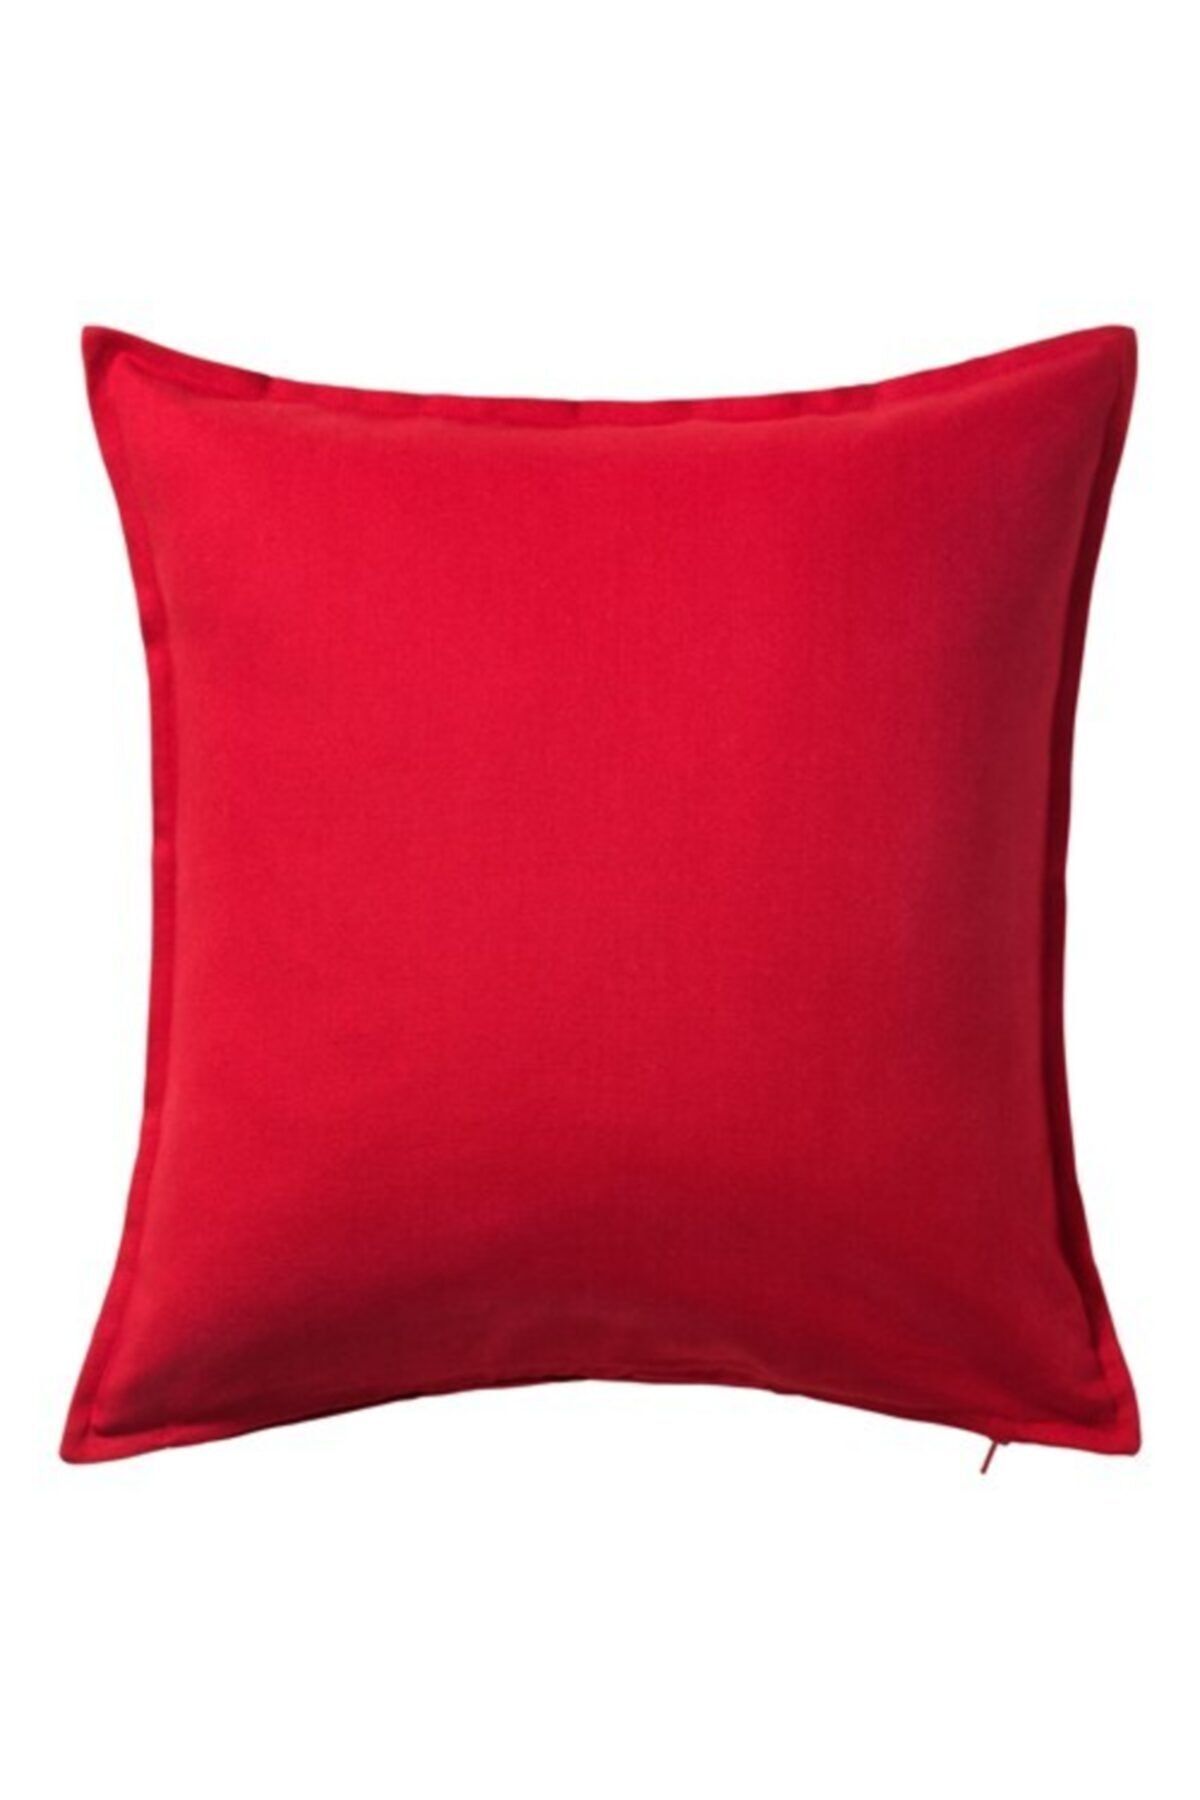 IKEA Minder Kırlent Kılıfı Meridyendukkan 50x50 Cm Kırmızı Rengi Fermuarlı Yastık Kılıfı